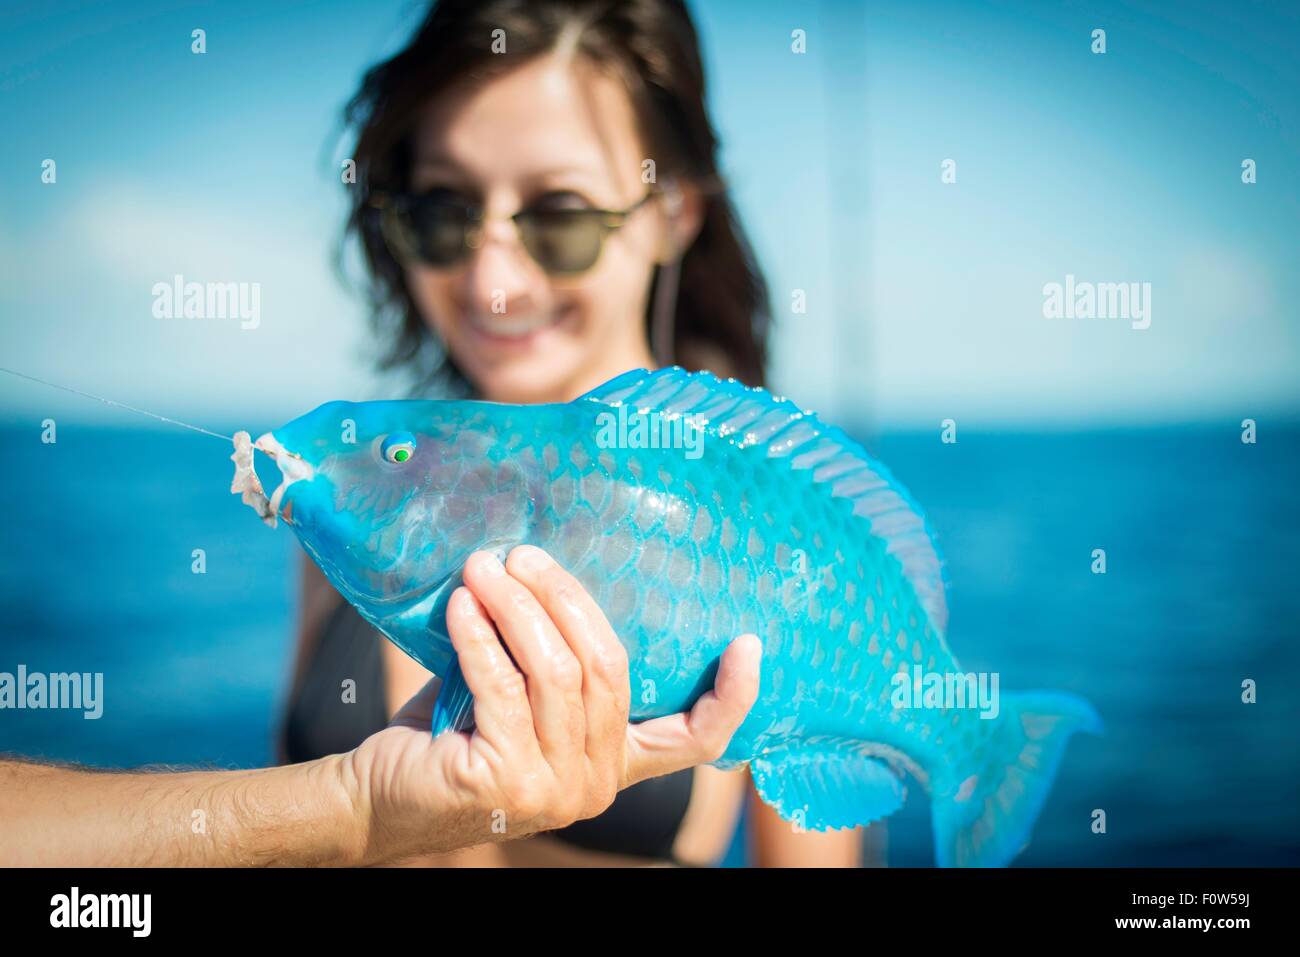 Maschio di mano azienda turchese pesci pappagallo per la giovane donna, Islamorada, Florida, Stati Uniti d'America Foto Stock